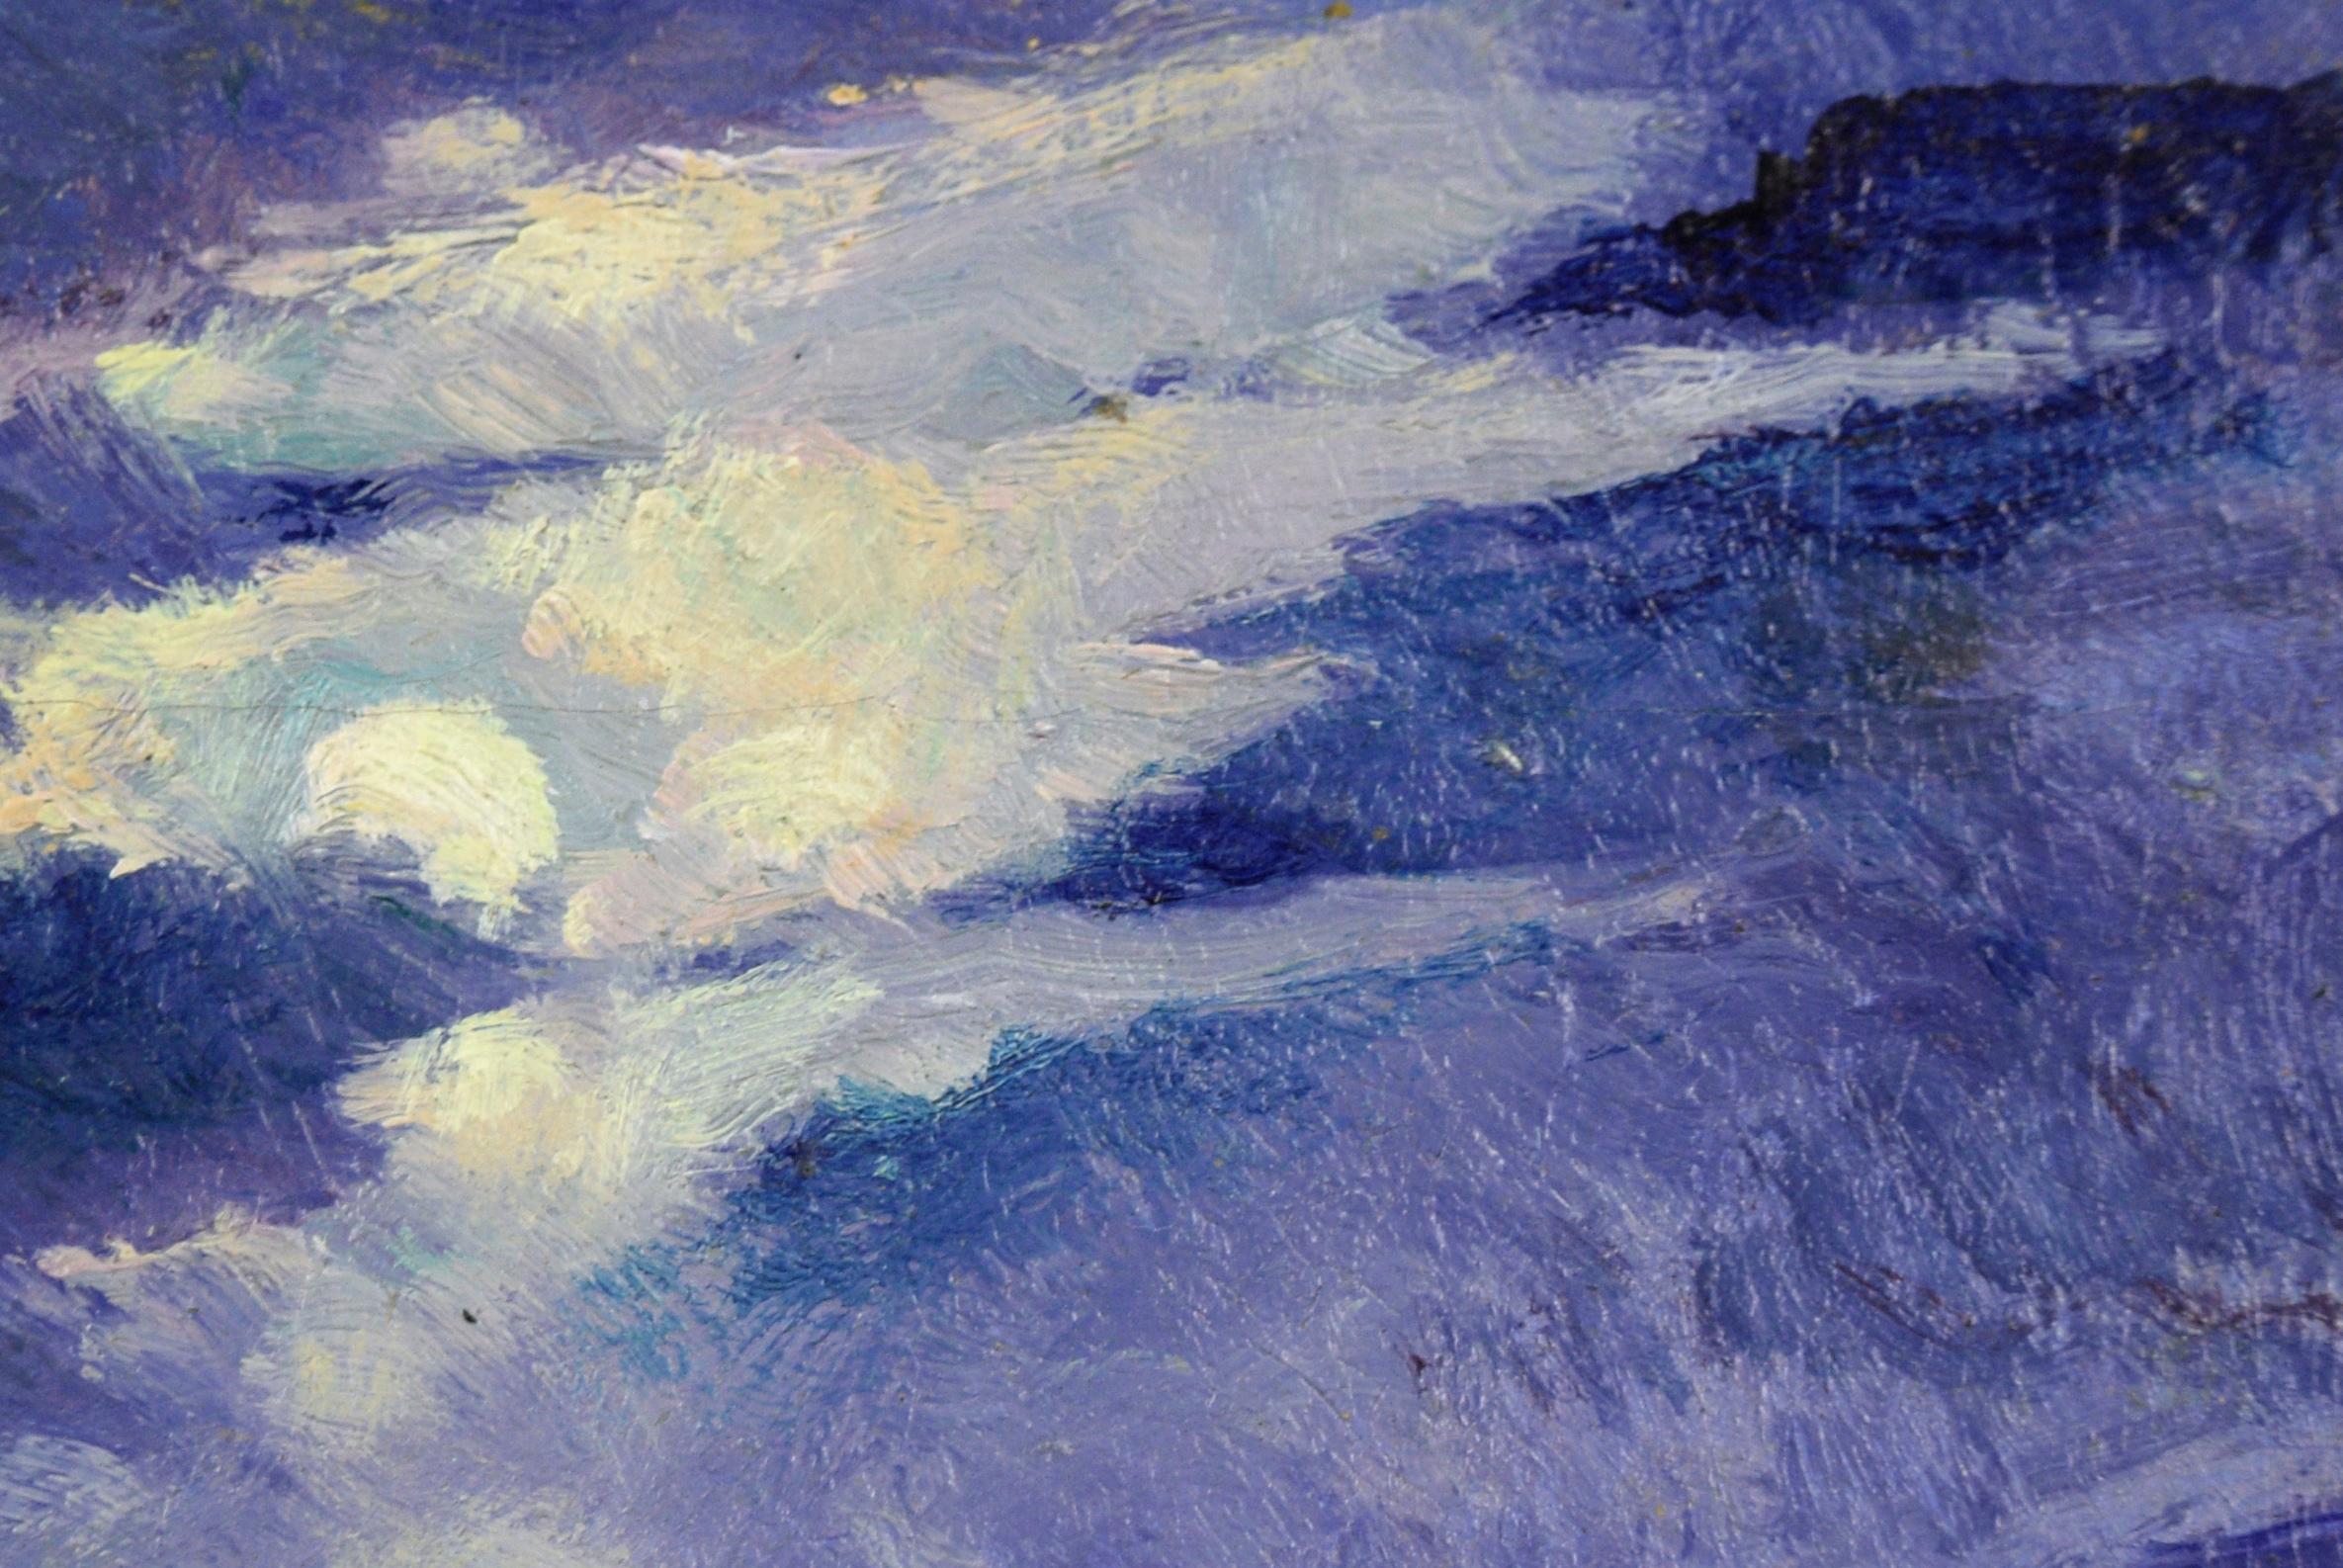 Midnight Seascape Carmel River, Miniatur-Skulptur (Amerikanischer Impressionismus), Painting, von Unknown